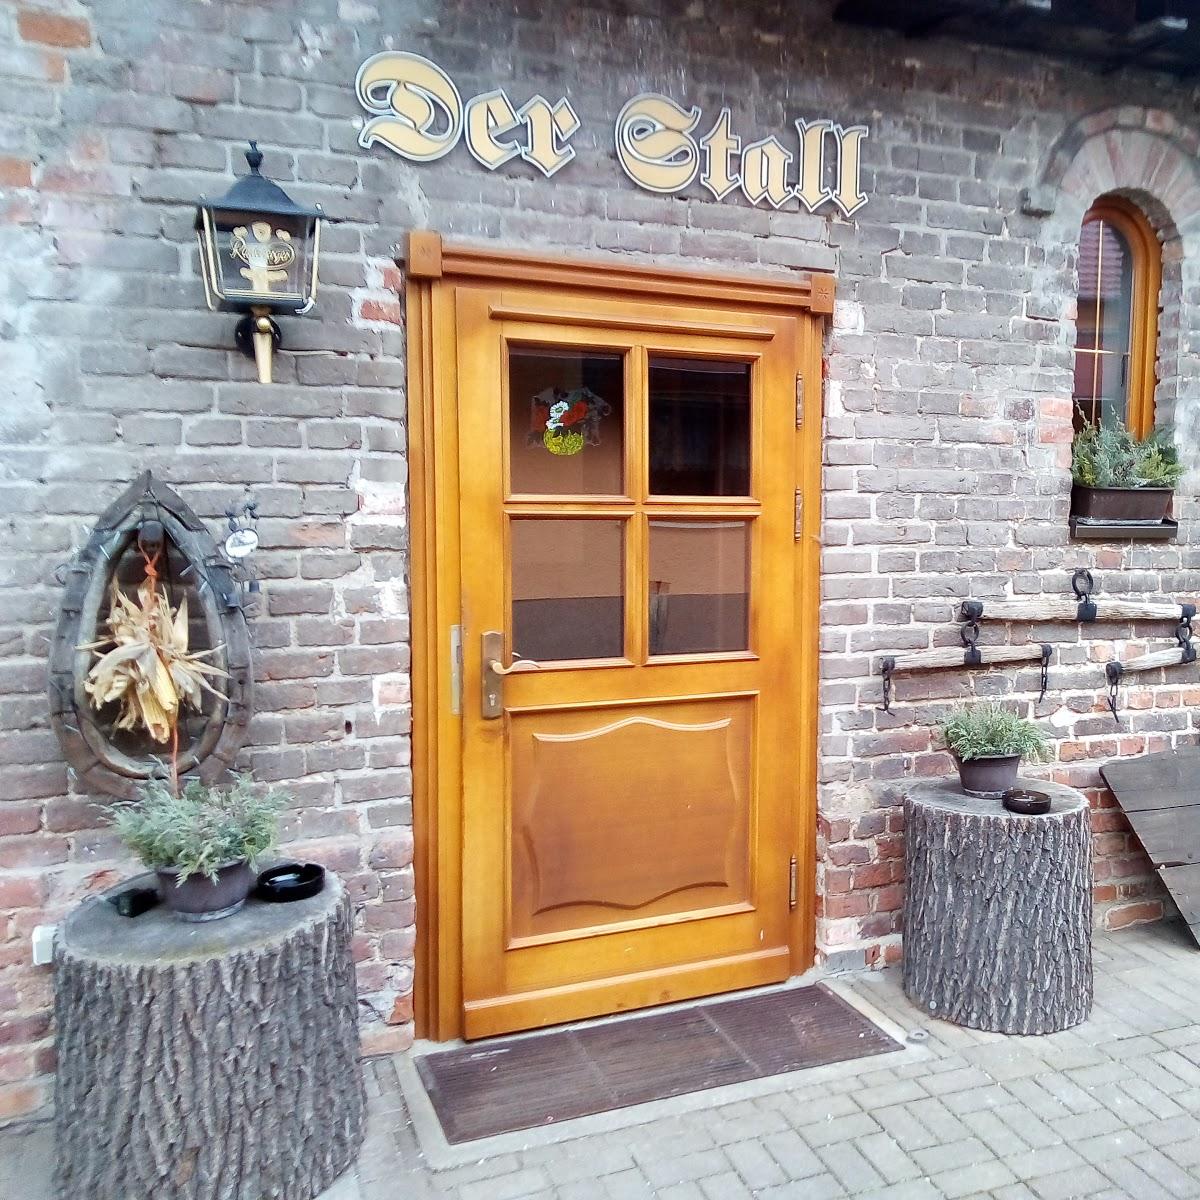 Restaurant "Gaststätte Schefter" in Guben